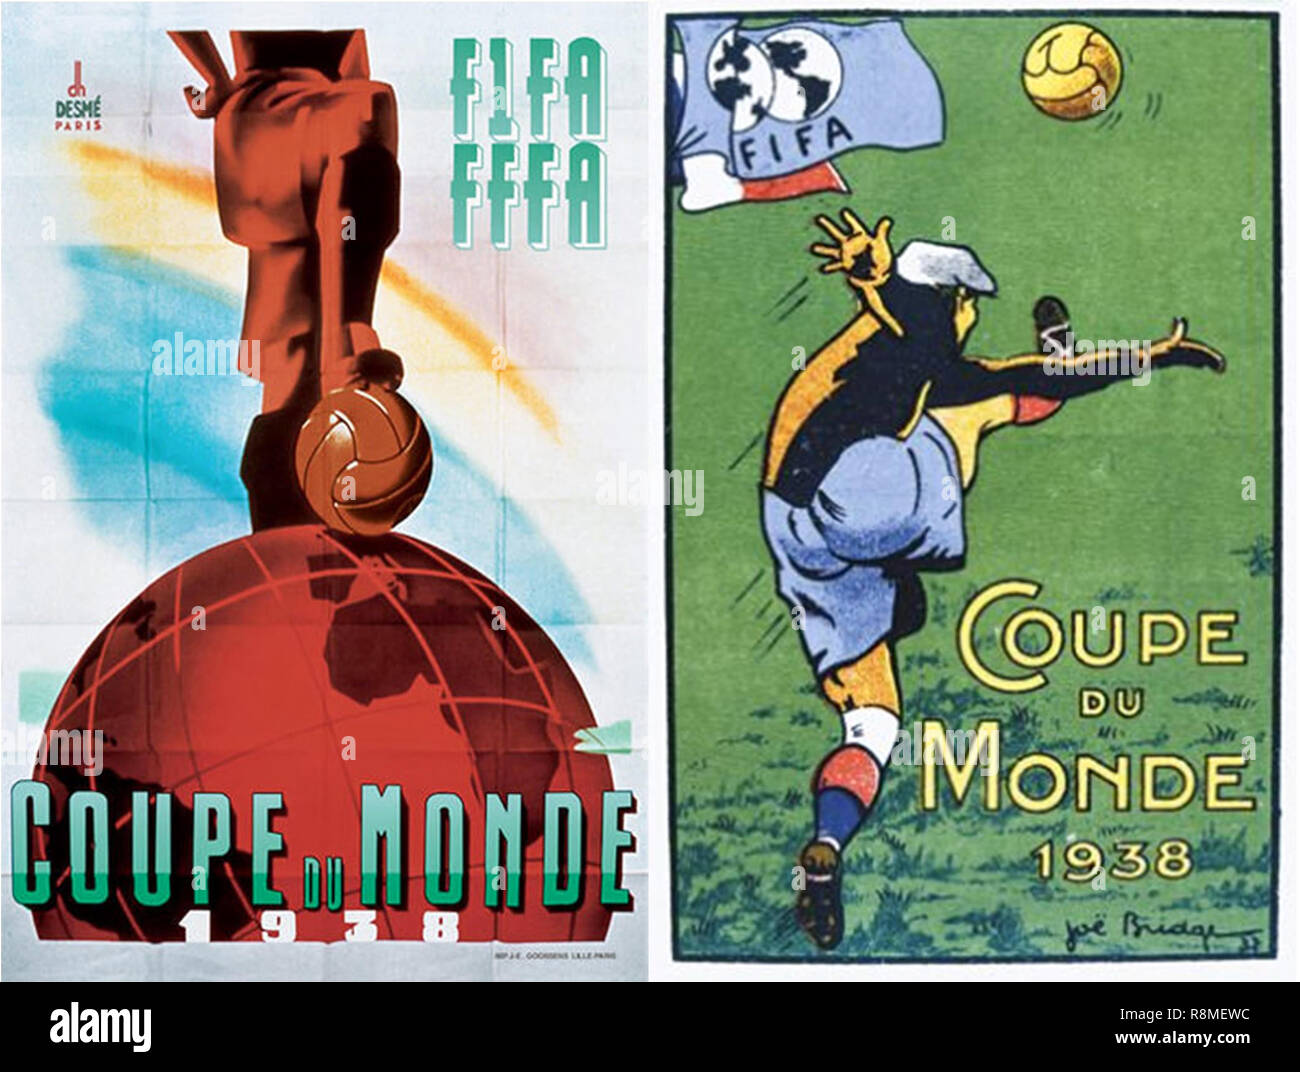 La Francia. Giugno, 1938. Poster celebrativo del campionato mondiale di calcio. Foto Stock